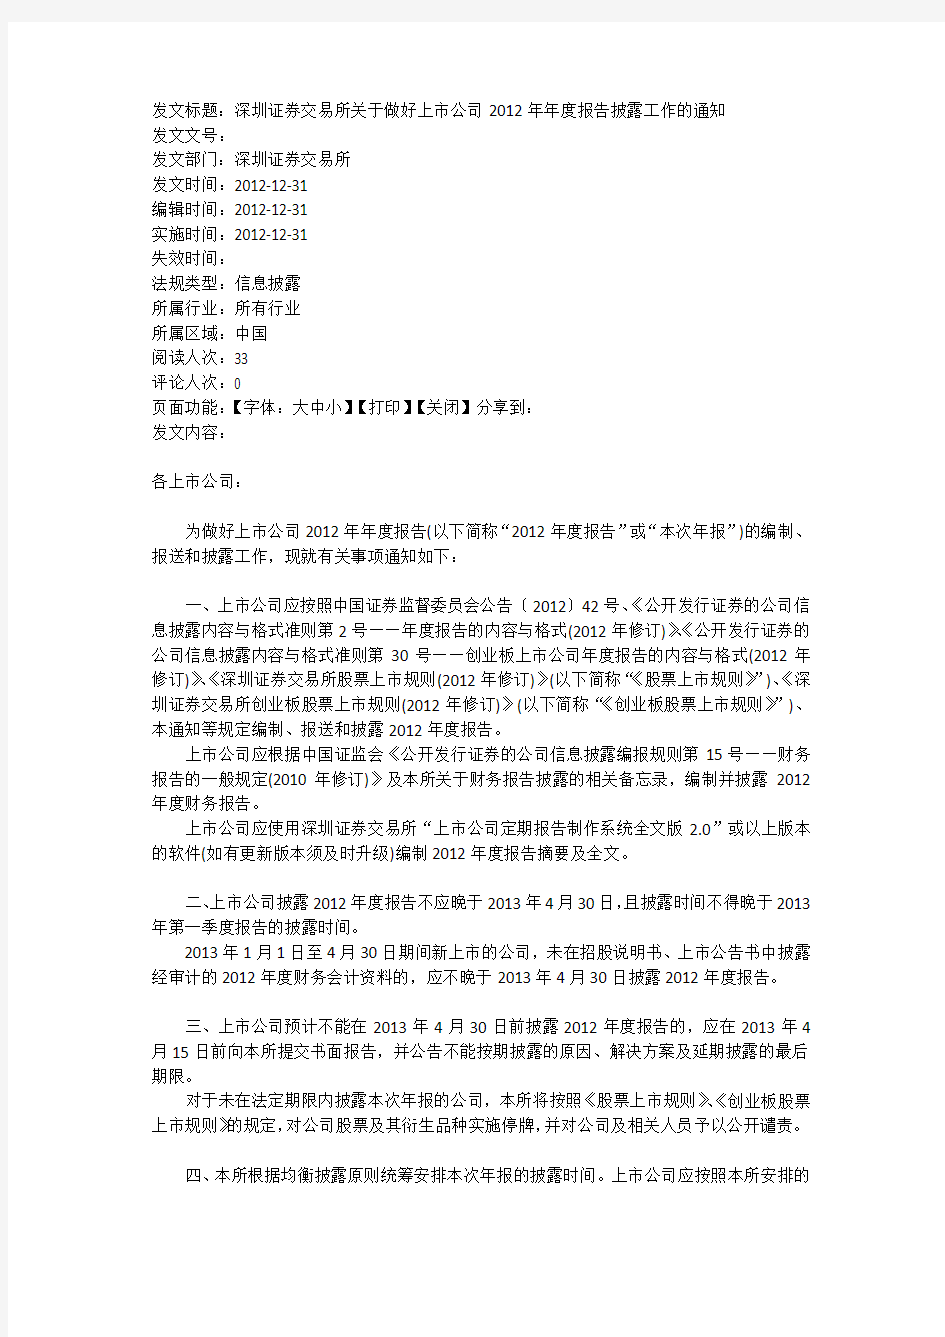 深圳证券交易所关于做好上市公司2012年年度报告披露工作的通知